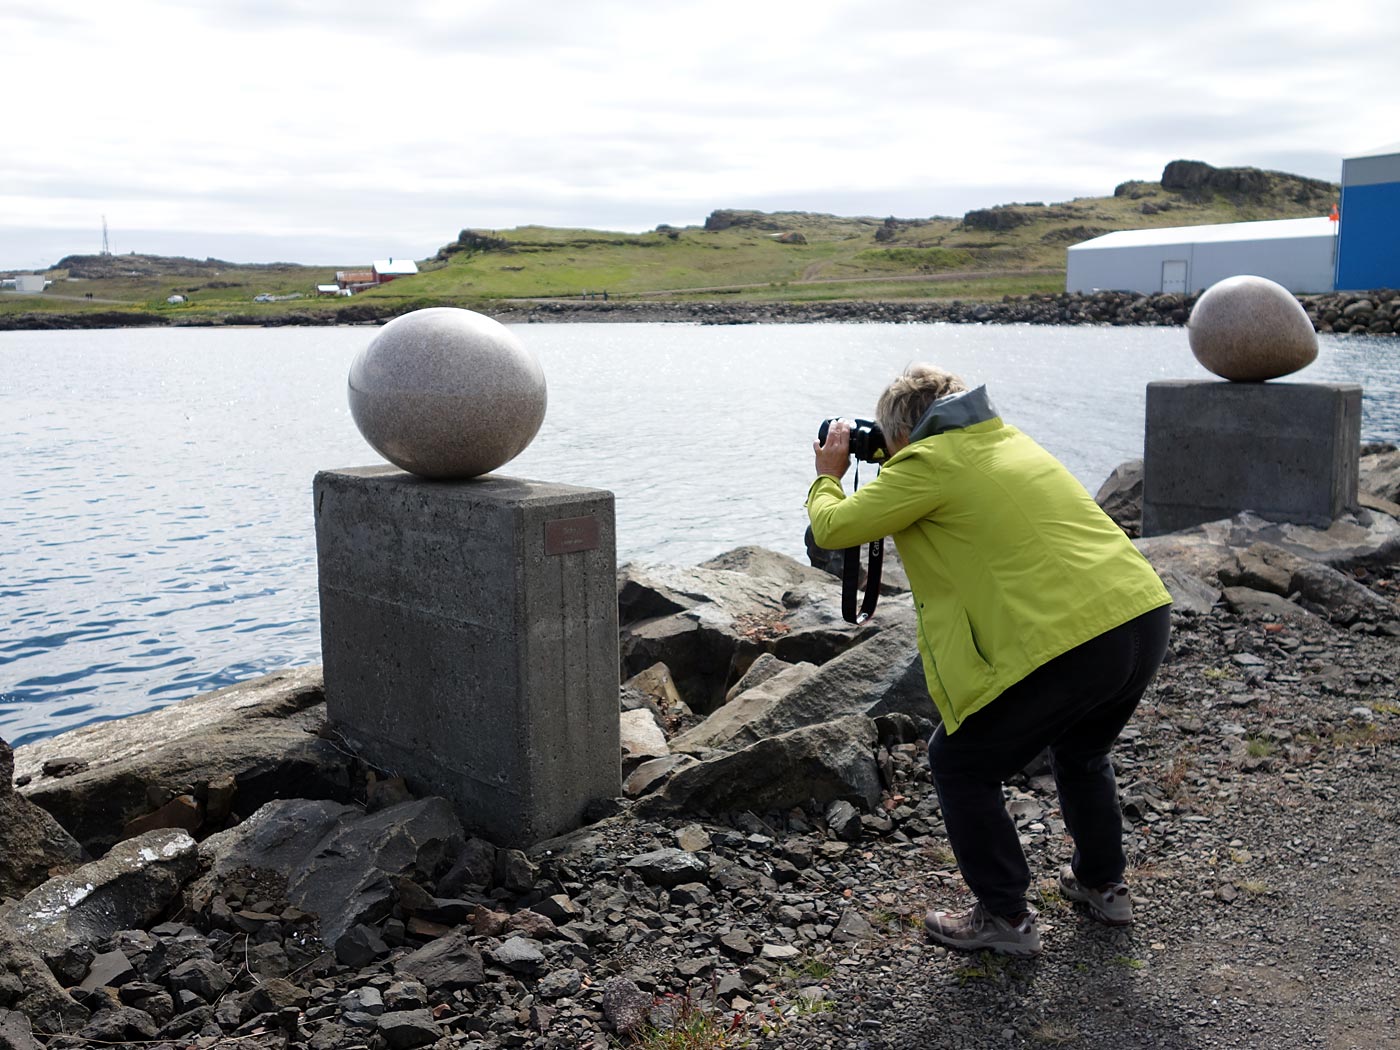 Around Iceland. Day II. Djúpivogur - Eskifjöður. - In Djúpivogur - 34 eggs (made of stone) of icelandic/local birds. It is an artwork by Sigurður Guðmundsson titled "Eggin í Gleðivík". II. (3 July 2013)